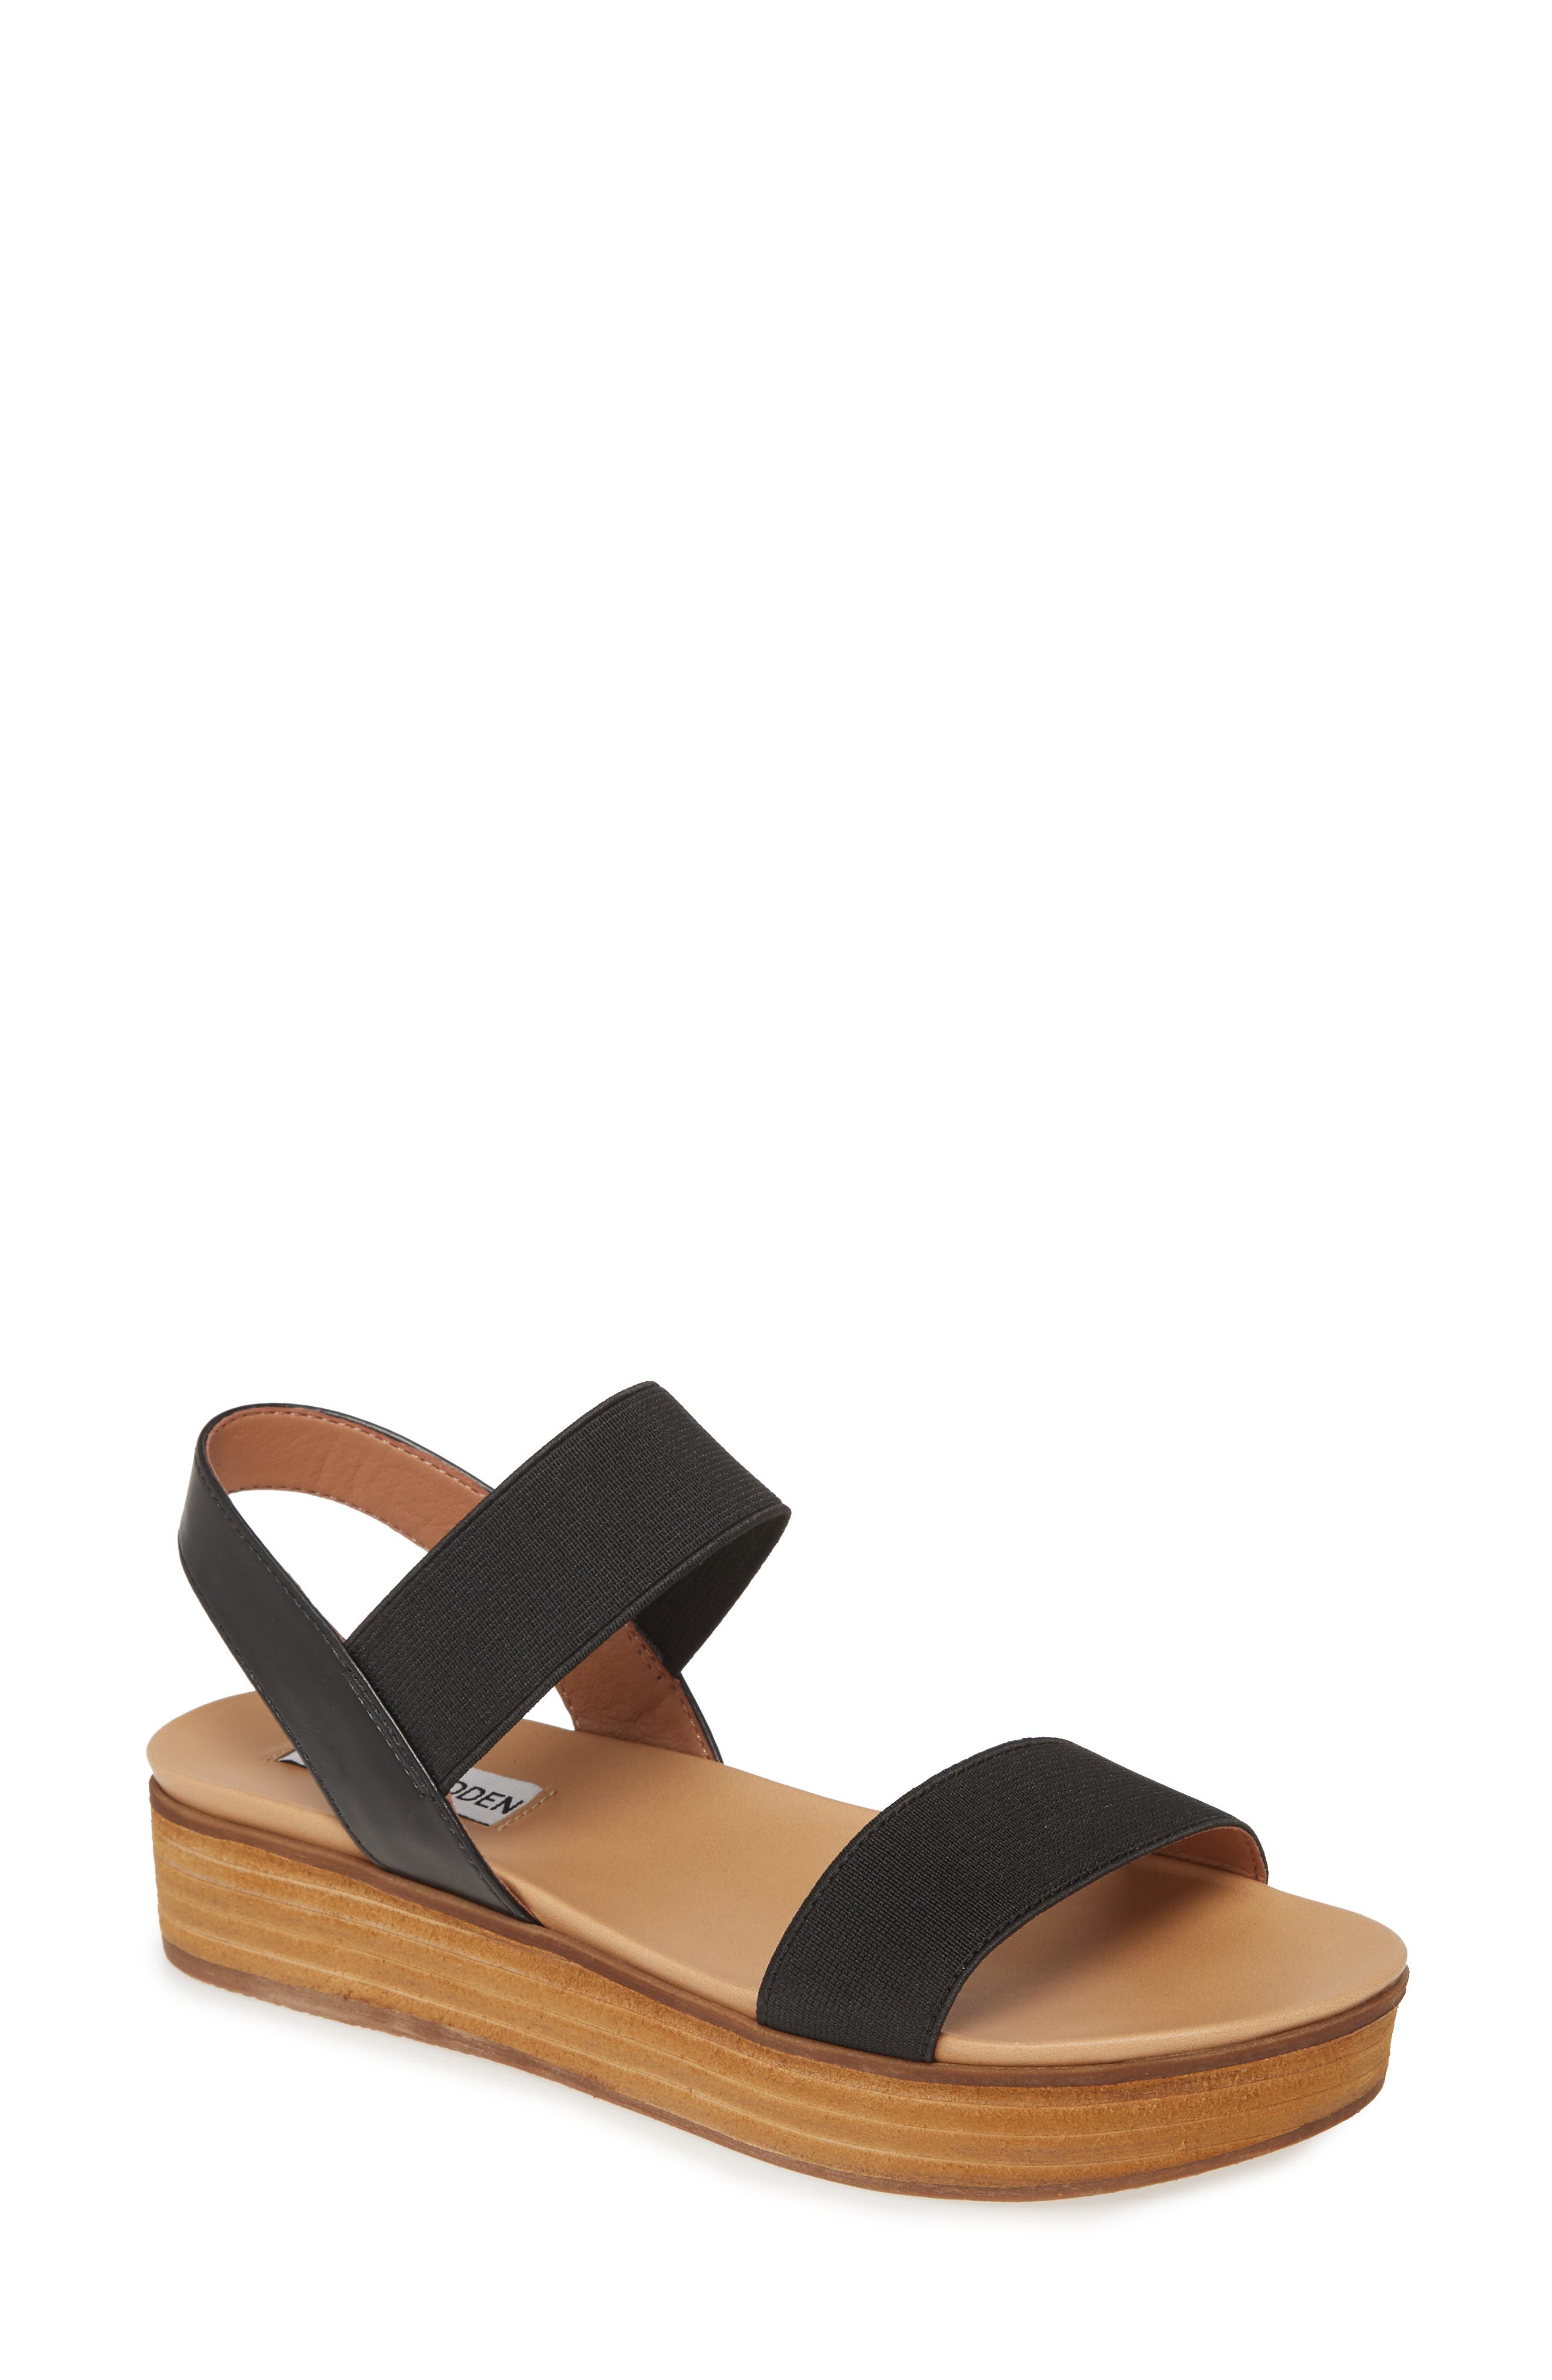 black steve madden platform sandals